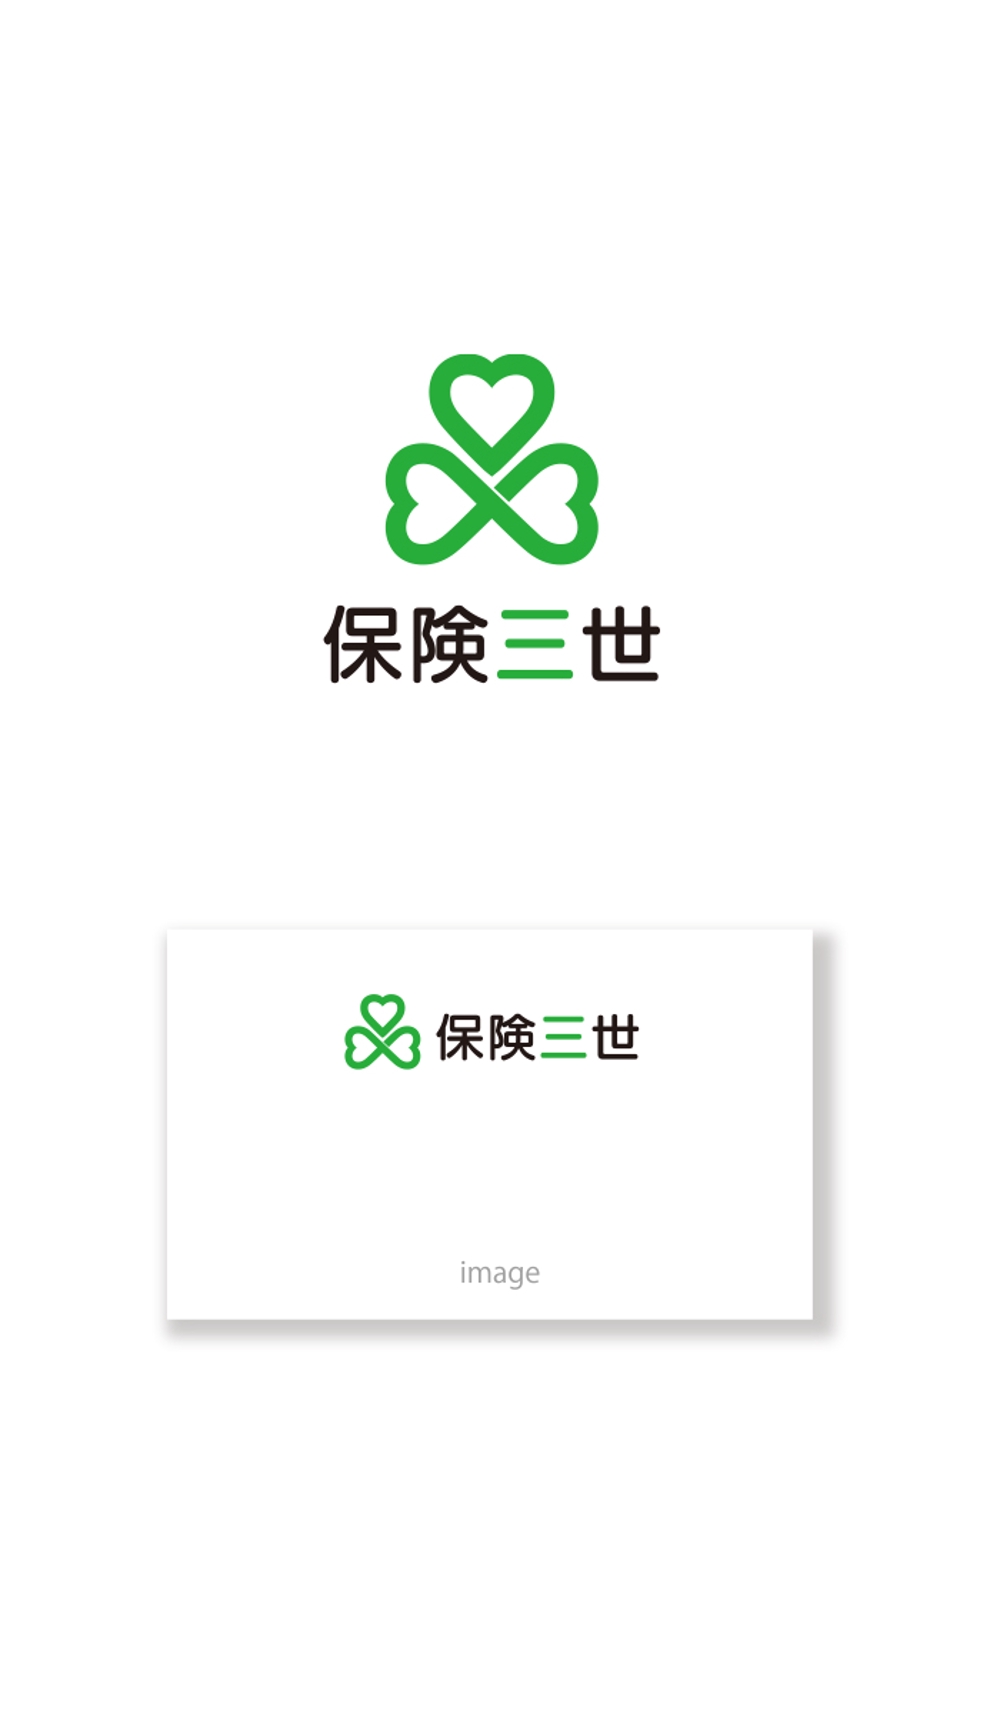 保険三世  logo_serve.jpg